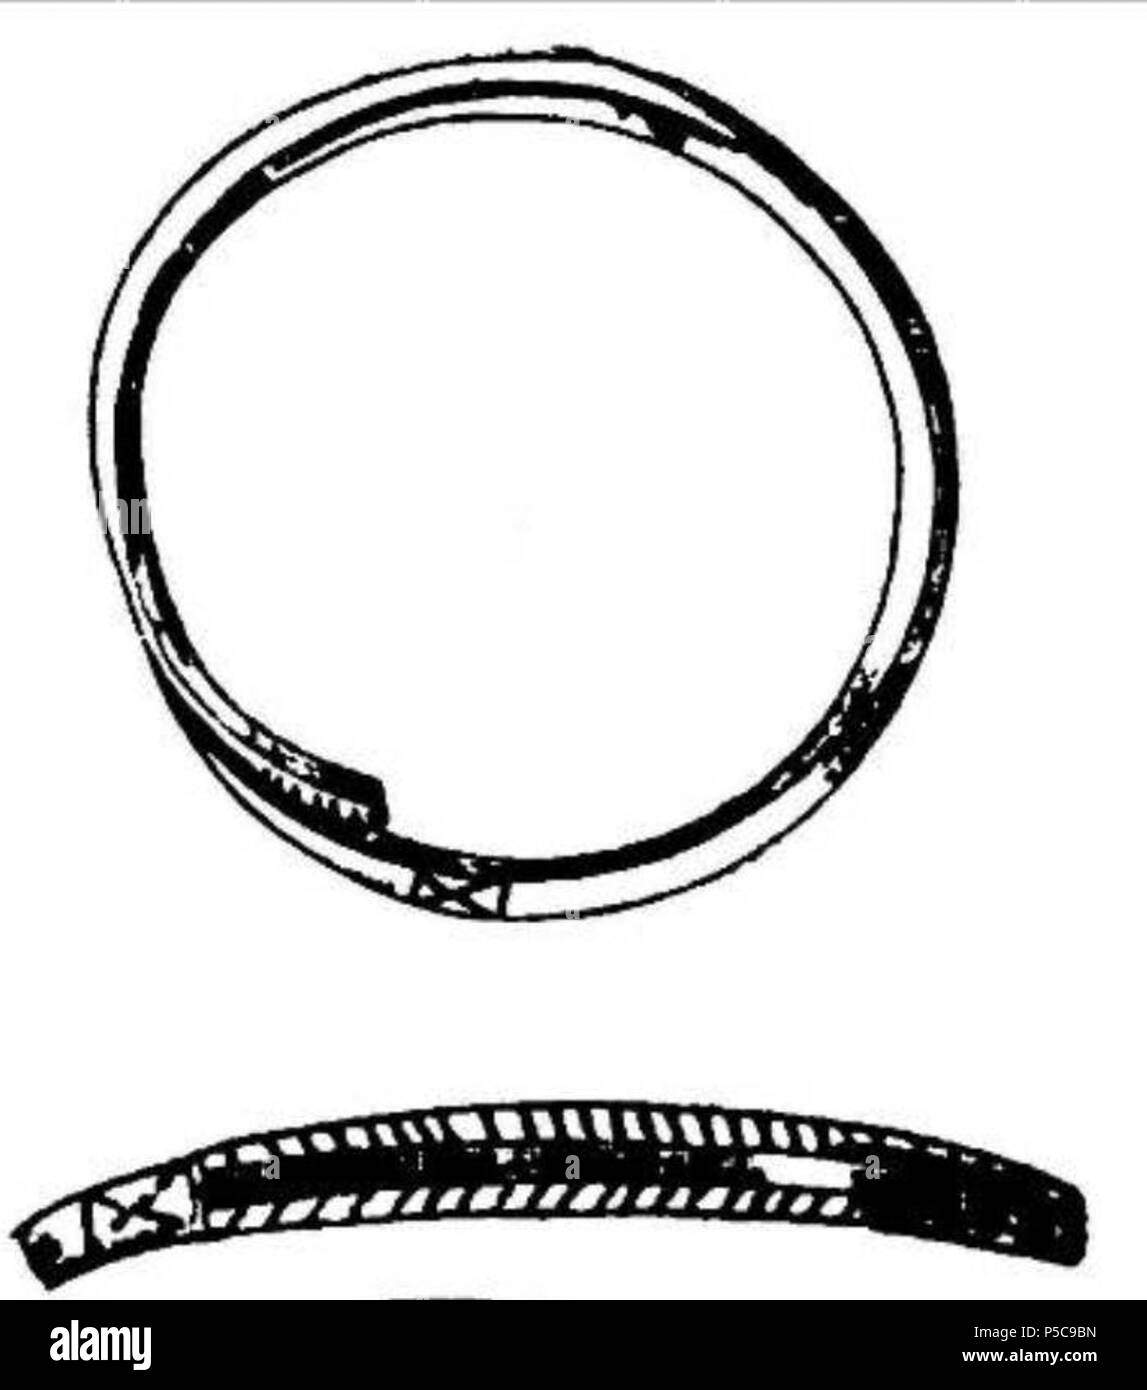 N/A. Anglais : découvertes archéologiques antiques : bracelets avec extrémités overlaping antique ; Dacia . 23 juillet 2011, 16:33 (UTC). 7-8-10-11-13-14 .jpg : Römer Floris Ferencz (1815-1889) instruments : Boldwin (talk) 405 72038 type bracelet Slimnic4 Banque D'Images